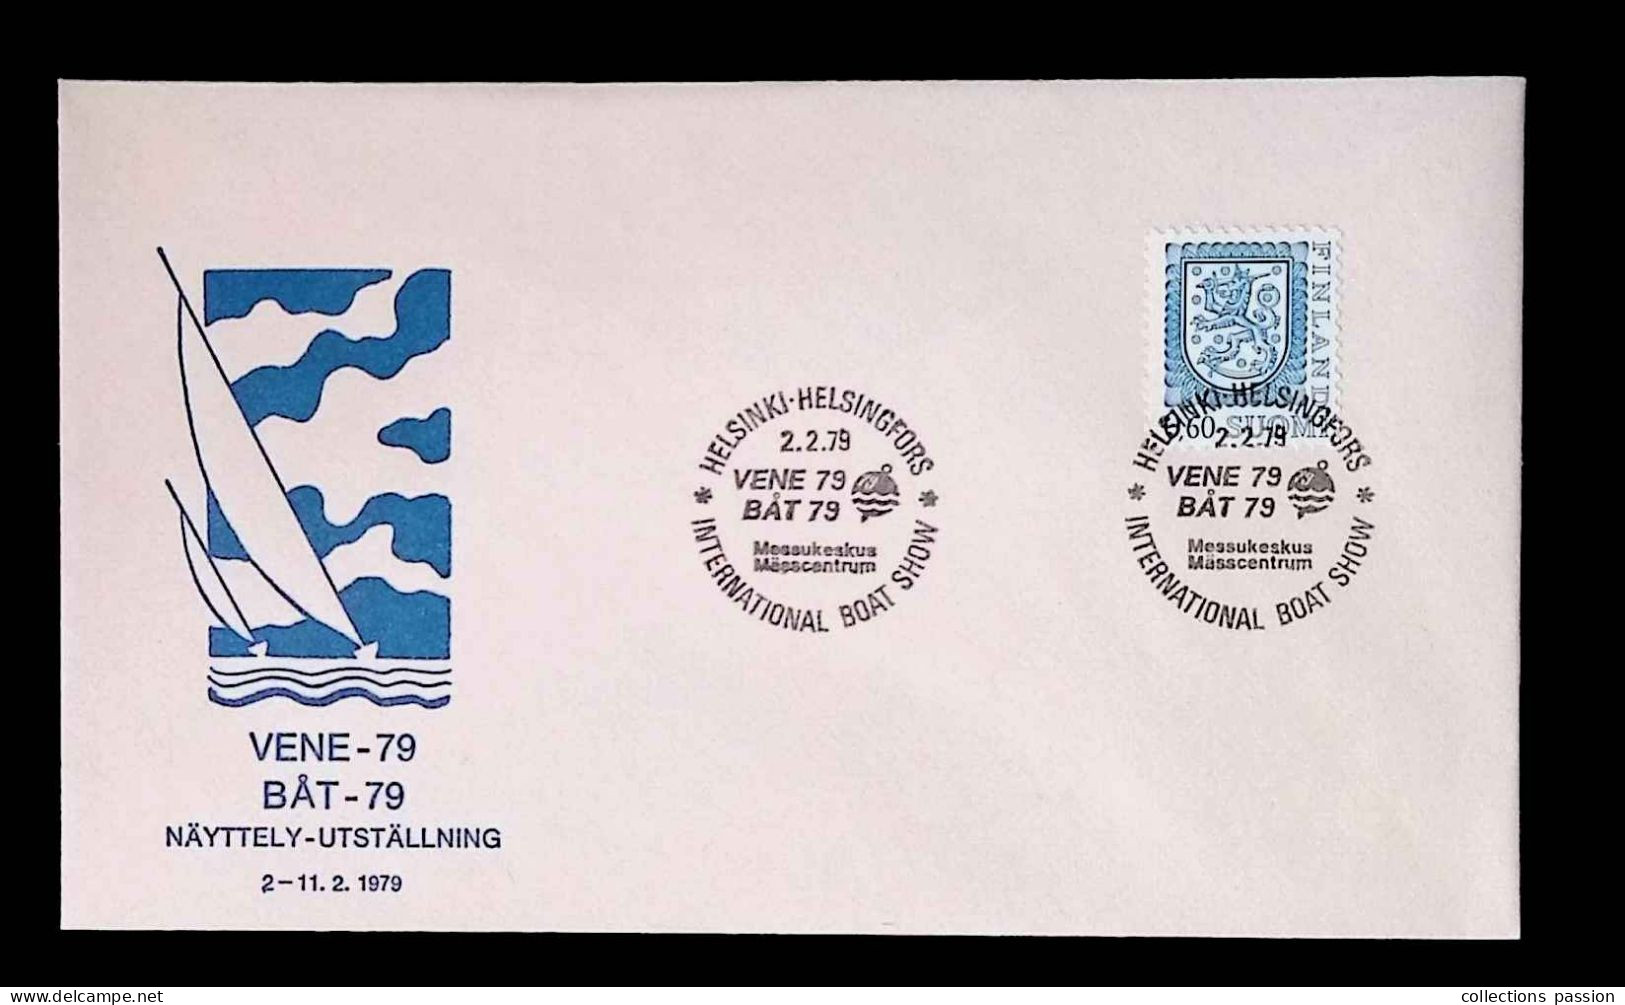 CL, Lettre, FDC, Suomi-Finland, Helsinki-Helsingfors, 2-2-79, International Boat Show - Lettres & Documents